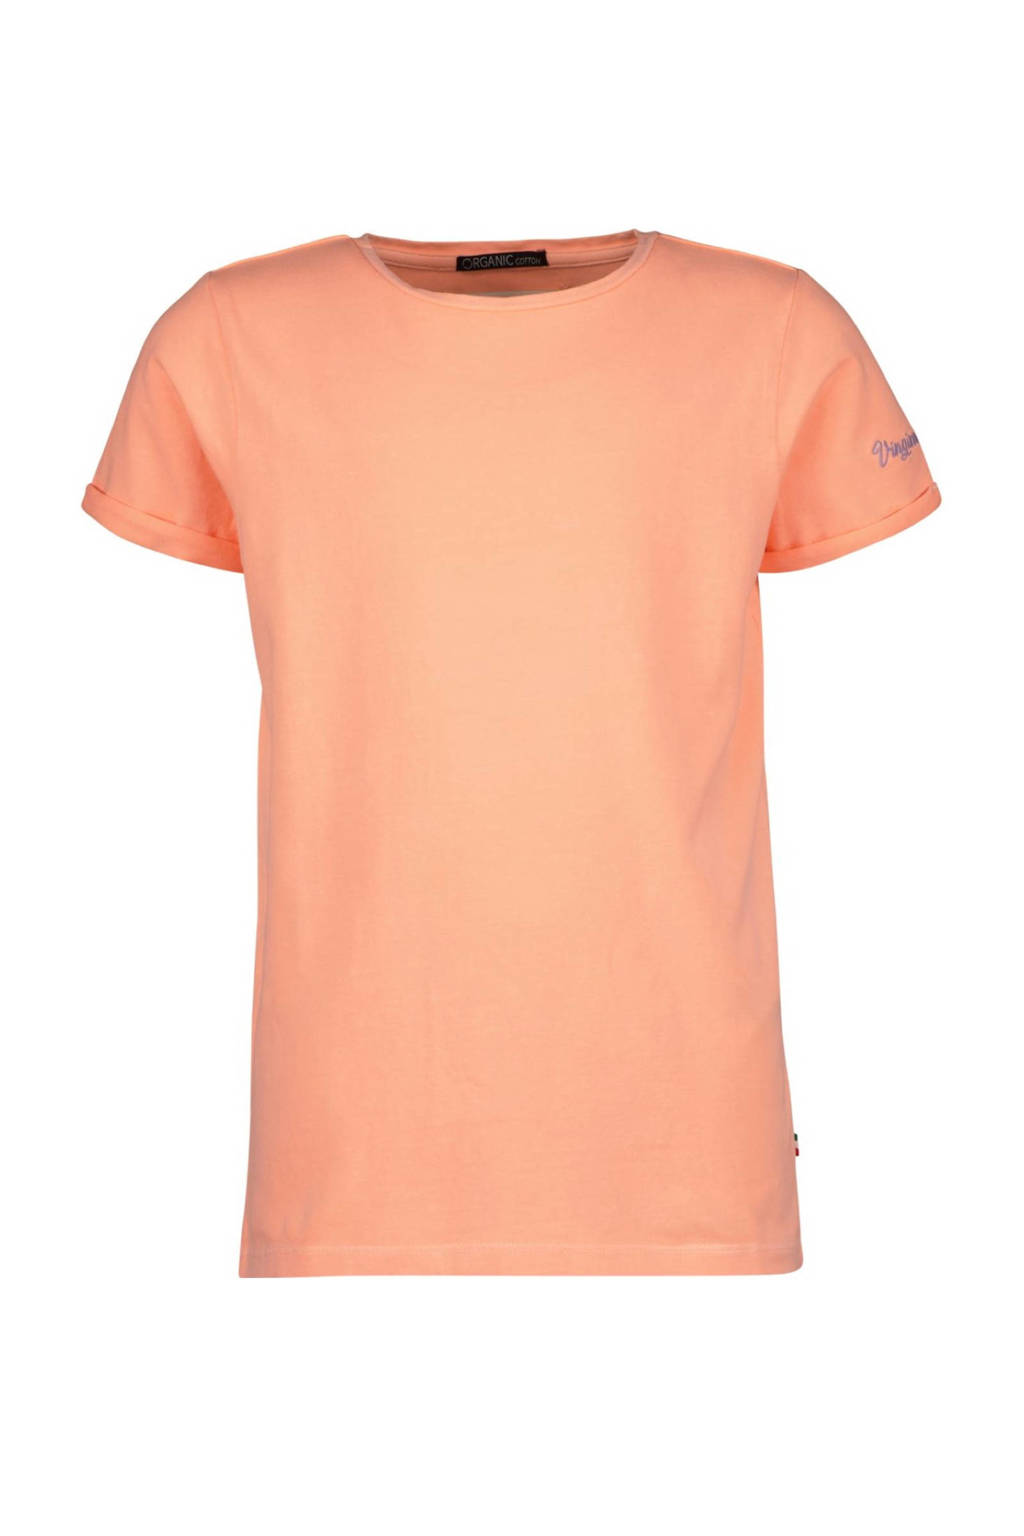 Oranje meisjes Vingino Essentials basic T-shirt perzik van stretchkatoen met korte mouwen en ronde hals